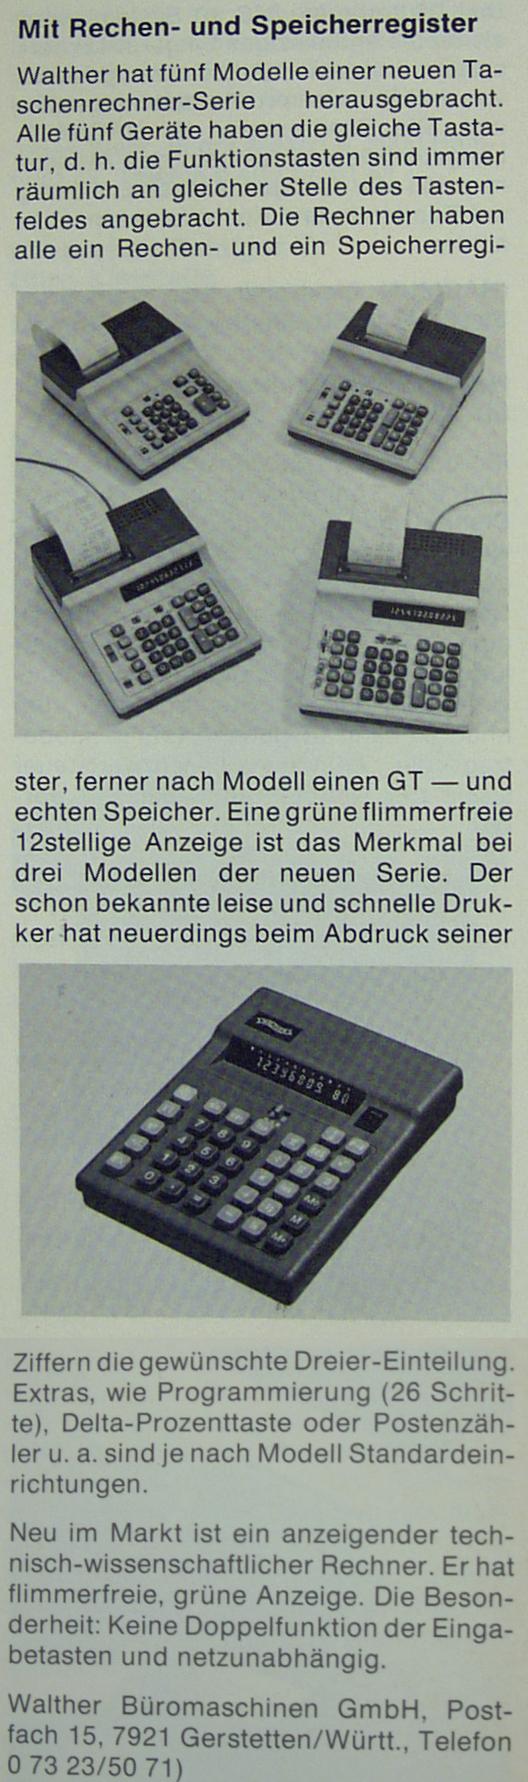 Produktbeschreibung aus Bürotechnik 1978